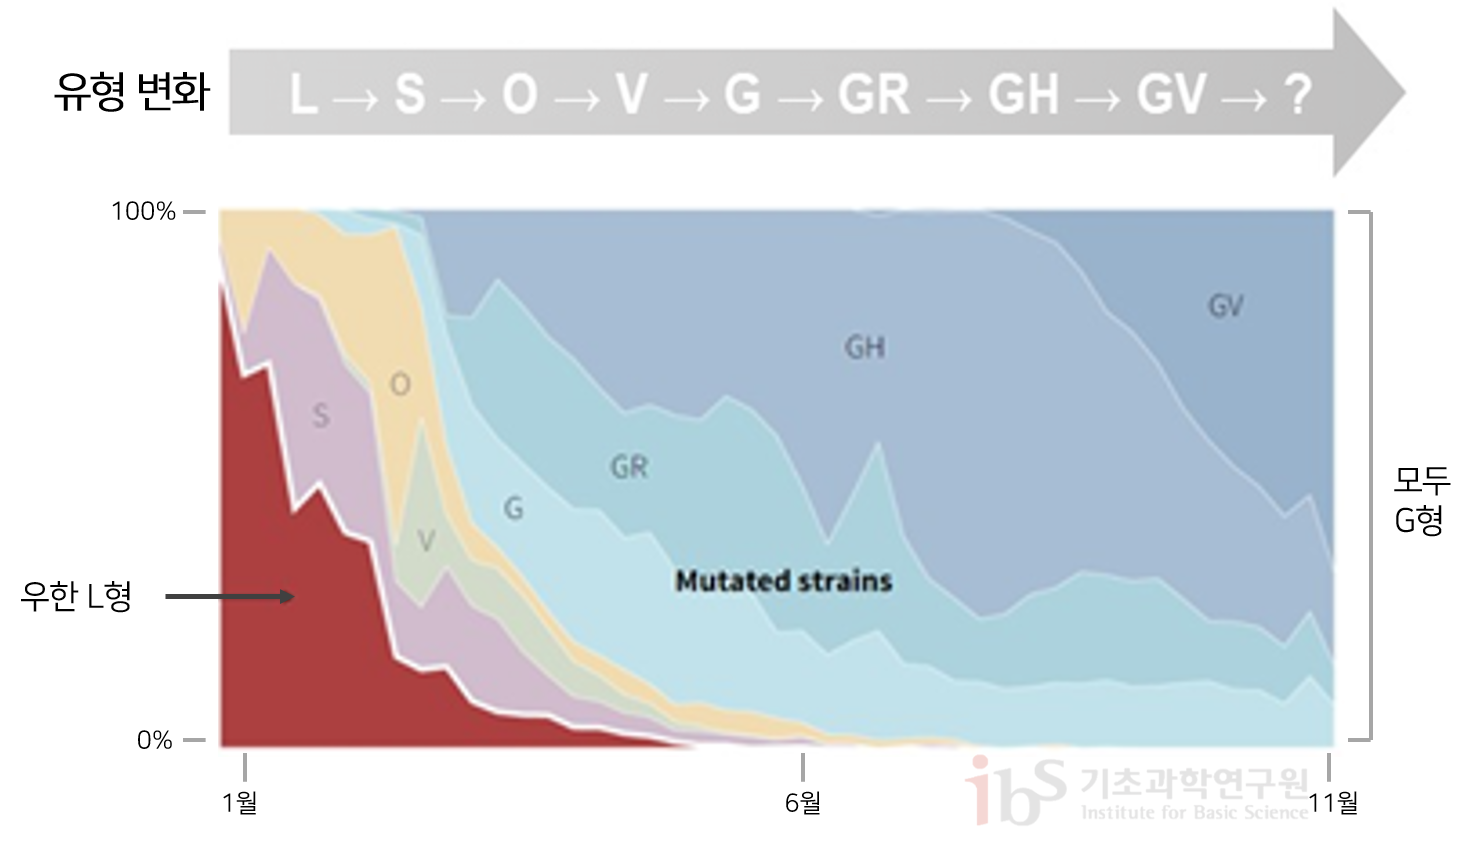 그림2. 사스코로나바이러스-2 돌연변이 추이 사스코로나바이러스 돌연변이 추이를 나타내는 그래프이다.

                유형변화 [L S O V G GR GH GV]
                1월에는 우한 L형, 11월에는 모두 G형에 가깝다.